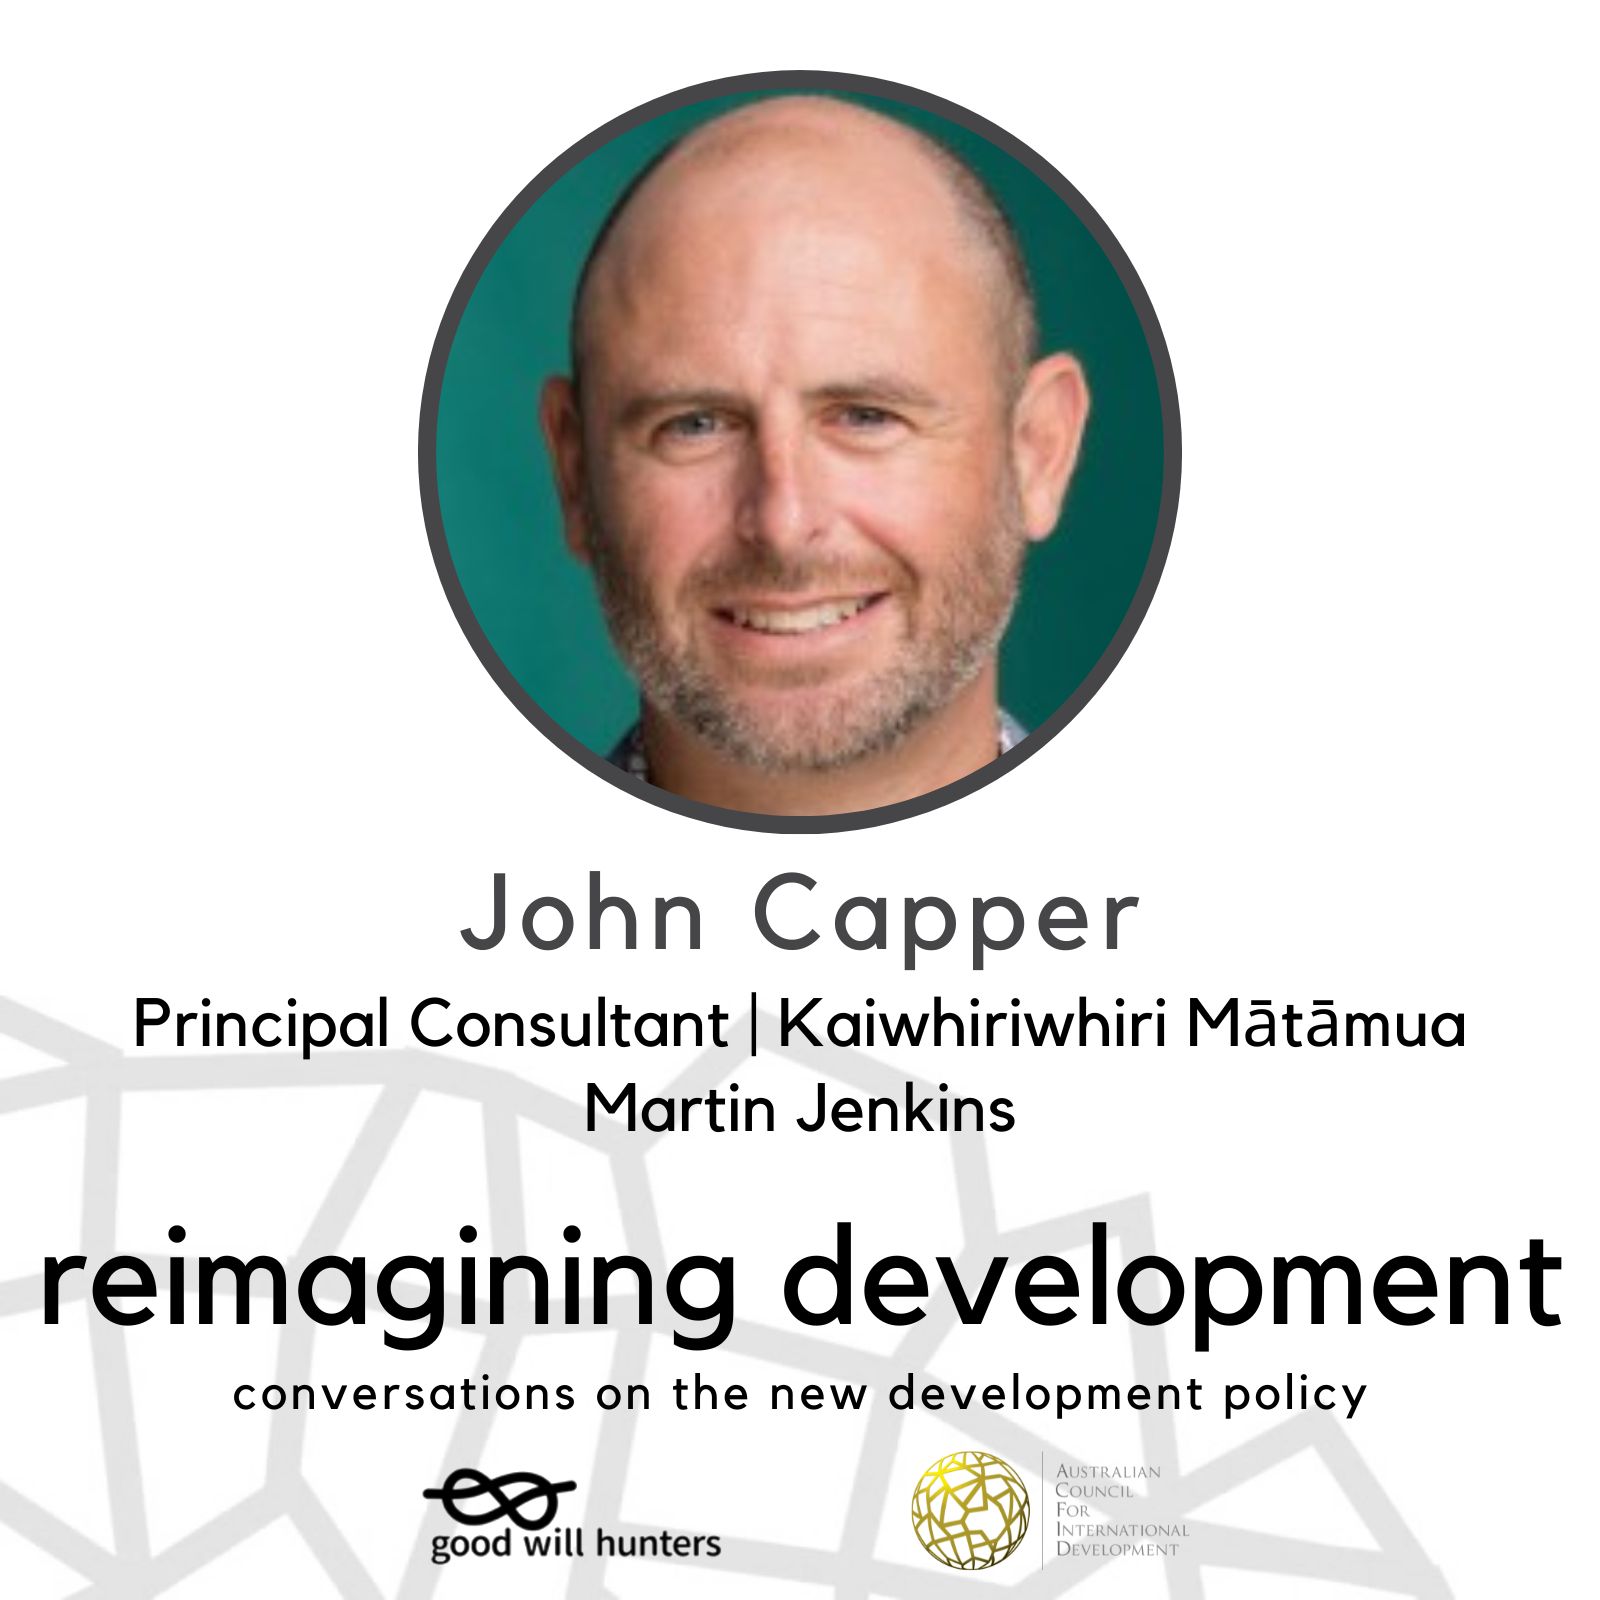 John Capper on Reimagining Development